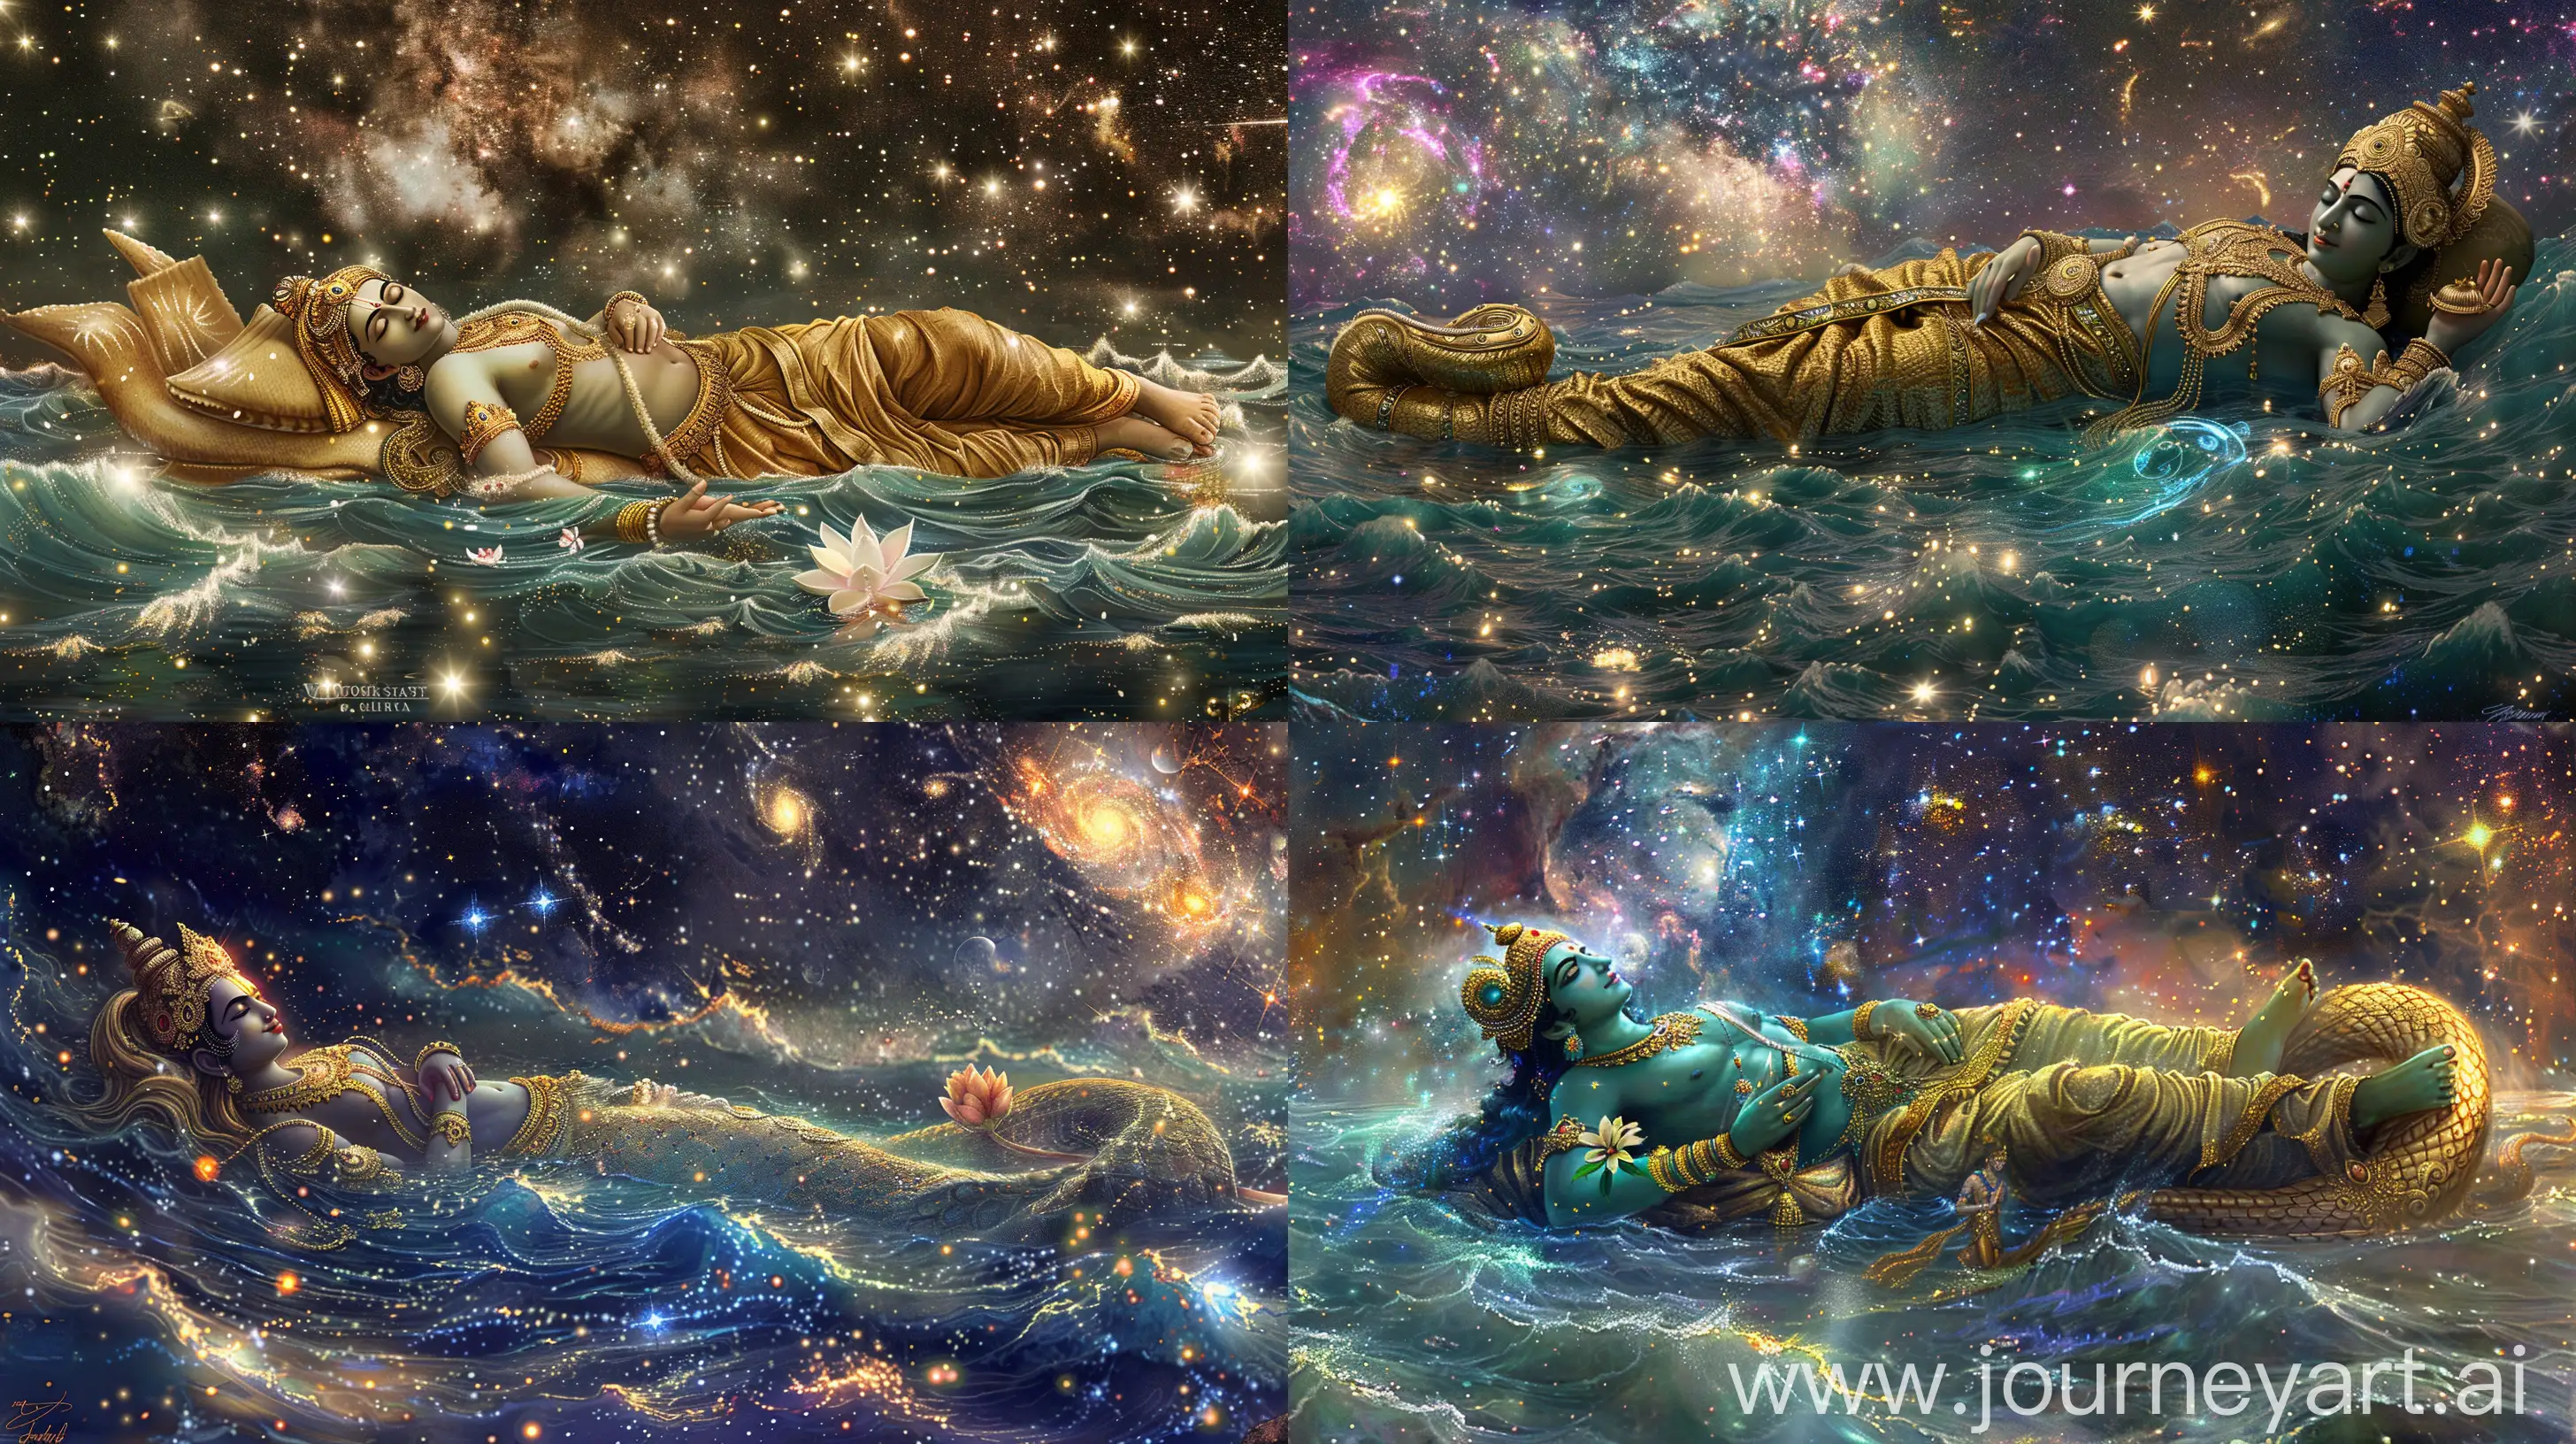 Lord-Vishnu-Sleeping-in-Cosmic-Ocean-with-Shesha-Serpent-and-Starlit-Atmosphere